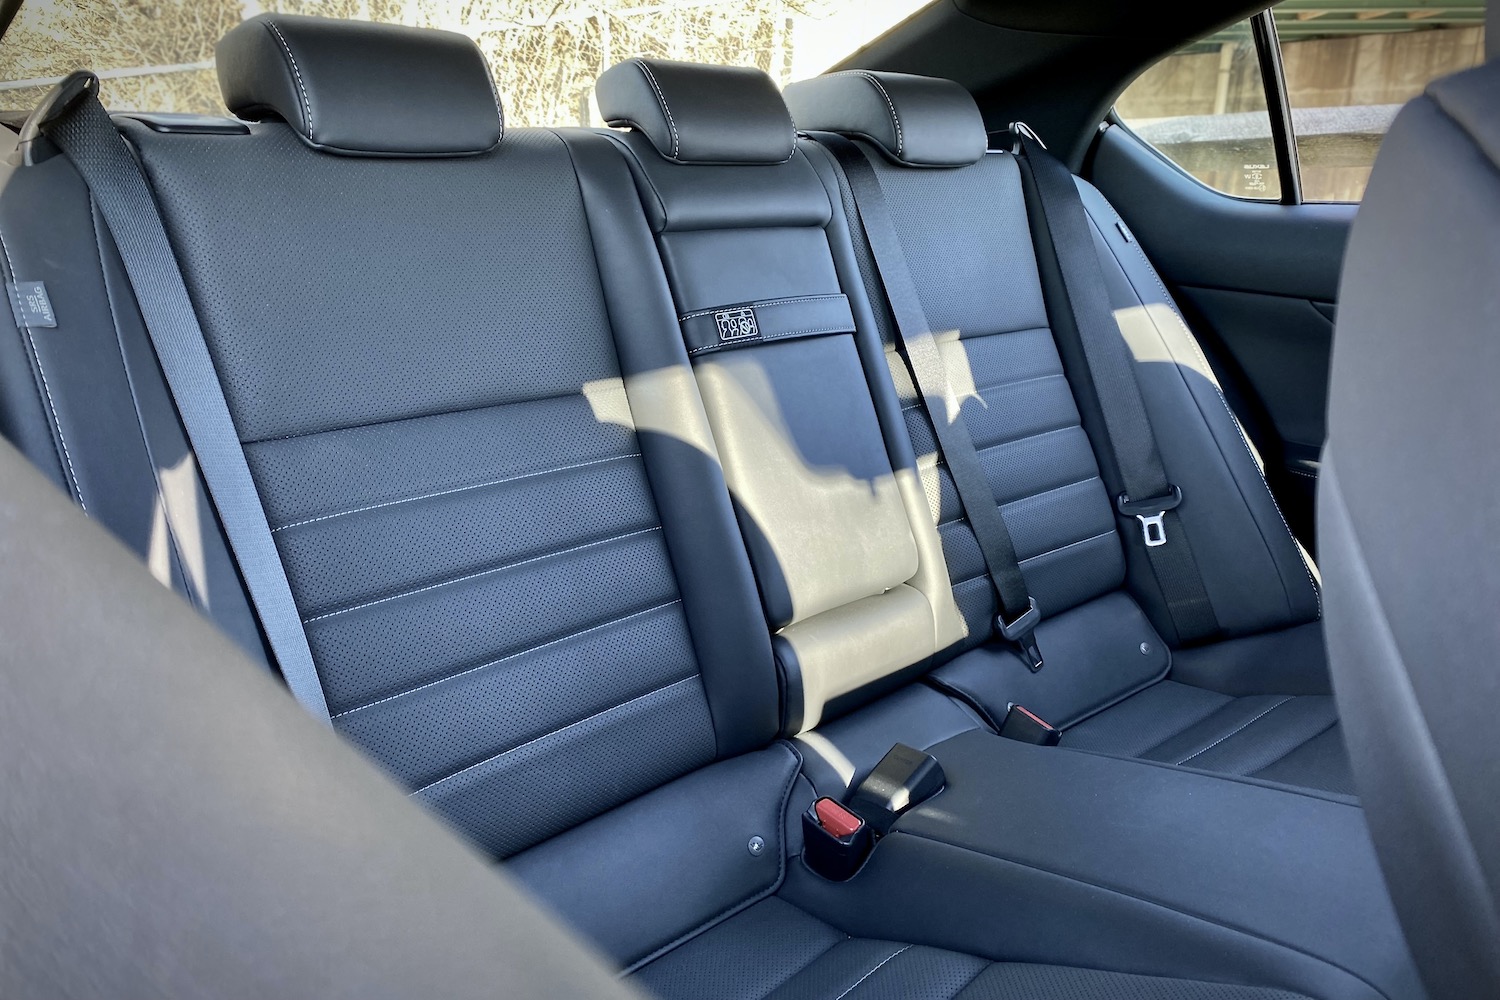 Lexus IS 500 rear seats from passenger's side.